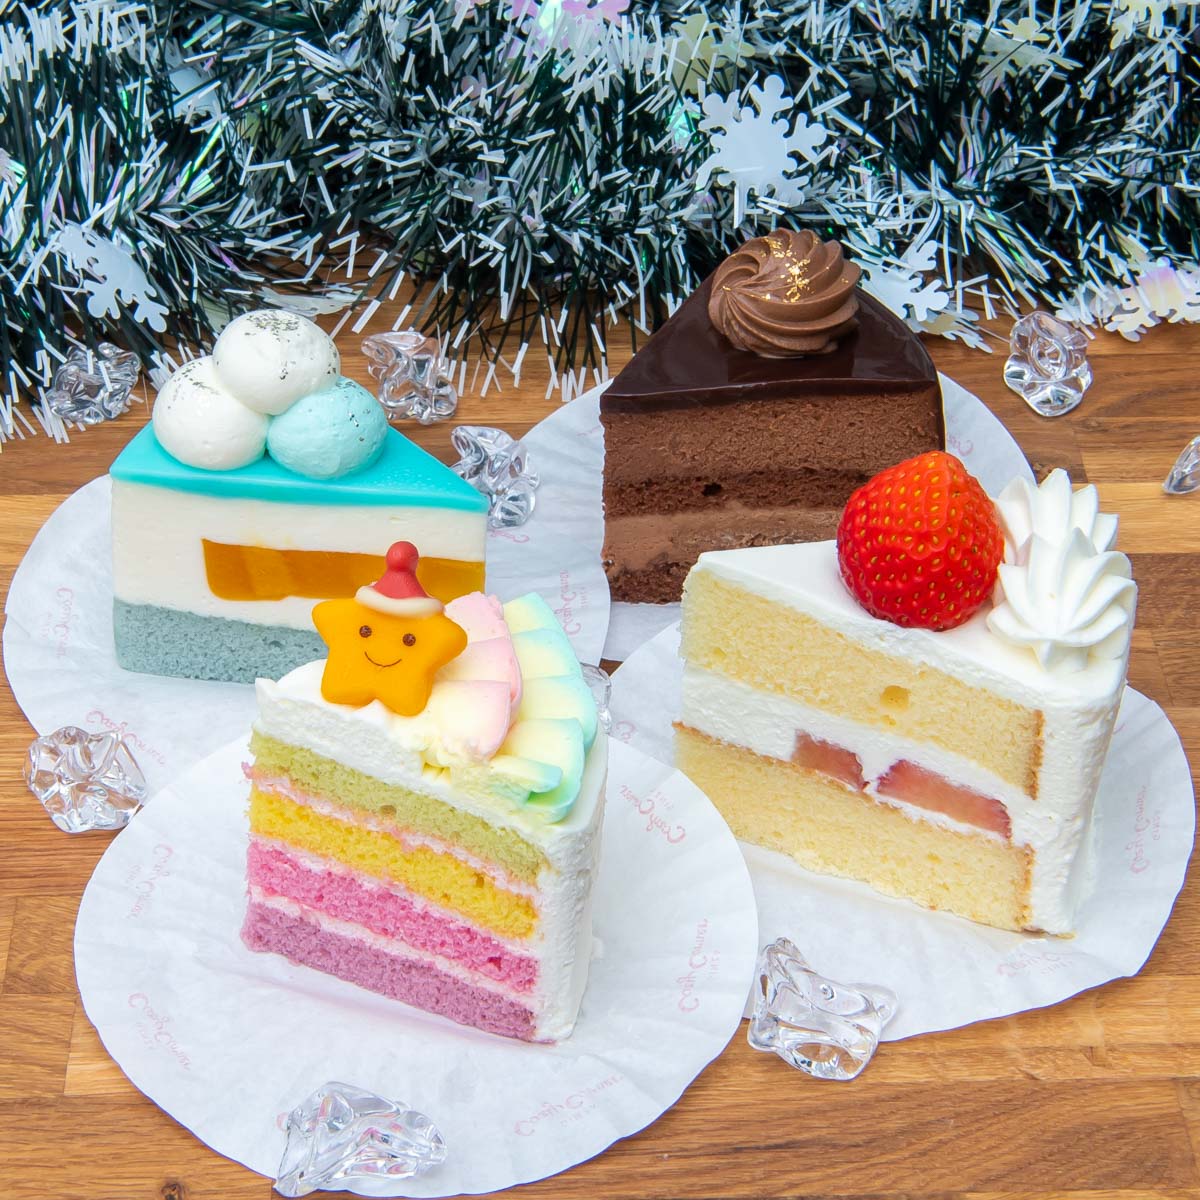 銀座コージーコーナー「2020年 クリスマスケーキ」まとめ